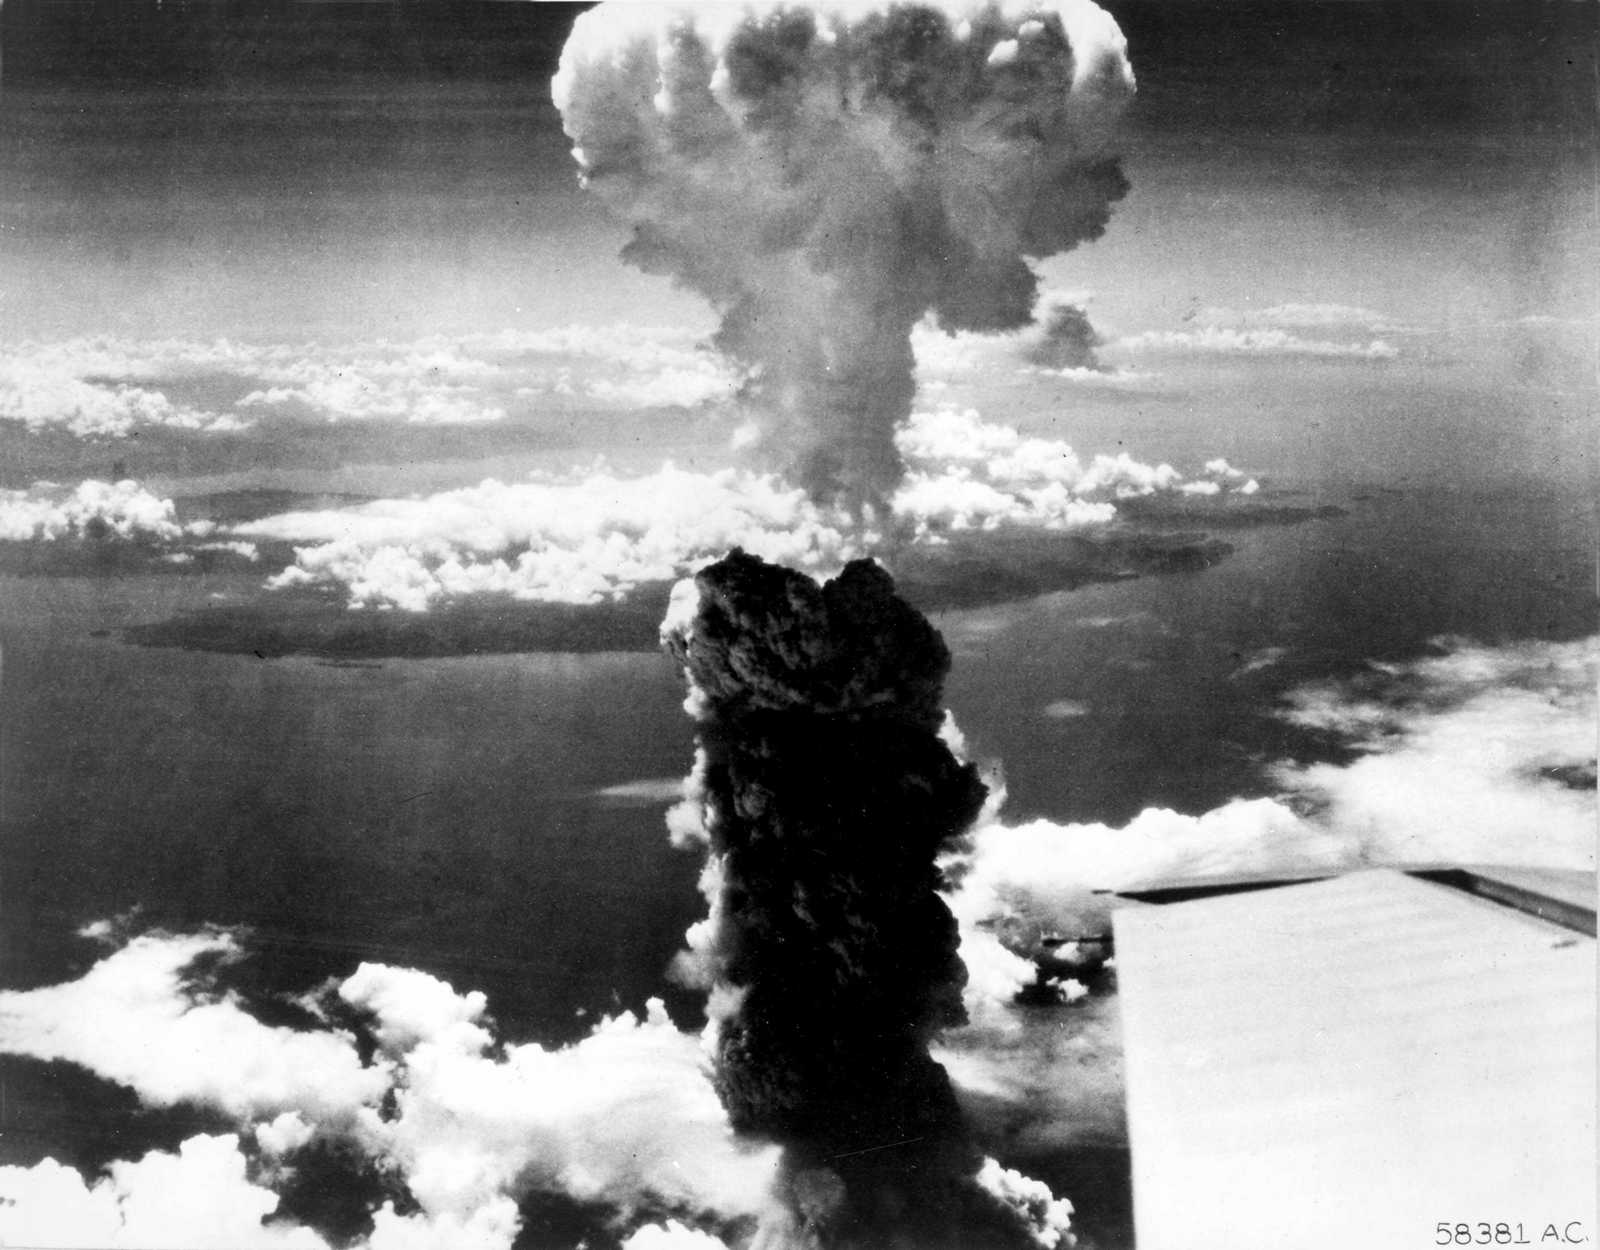 1945 年 7 月 16 日，人类历史上首次核爆炸——“三位一体”（Trinity）原子爆炸试验成功。正是 “曼哈顿计划”促成了这项试验，揭开了人类拥有核武器的历史。